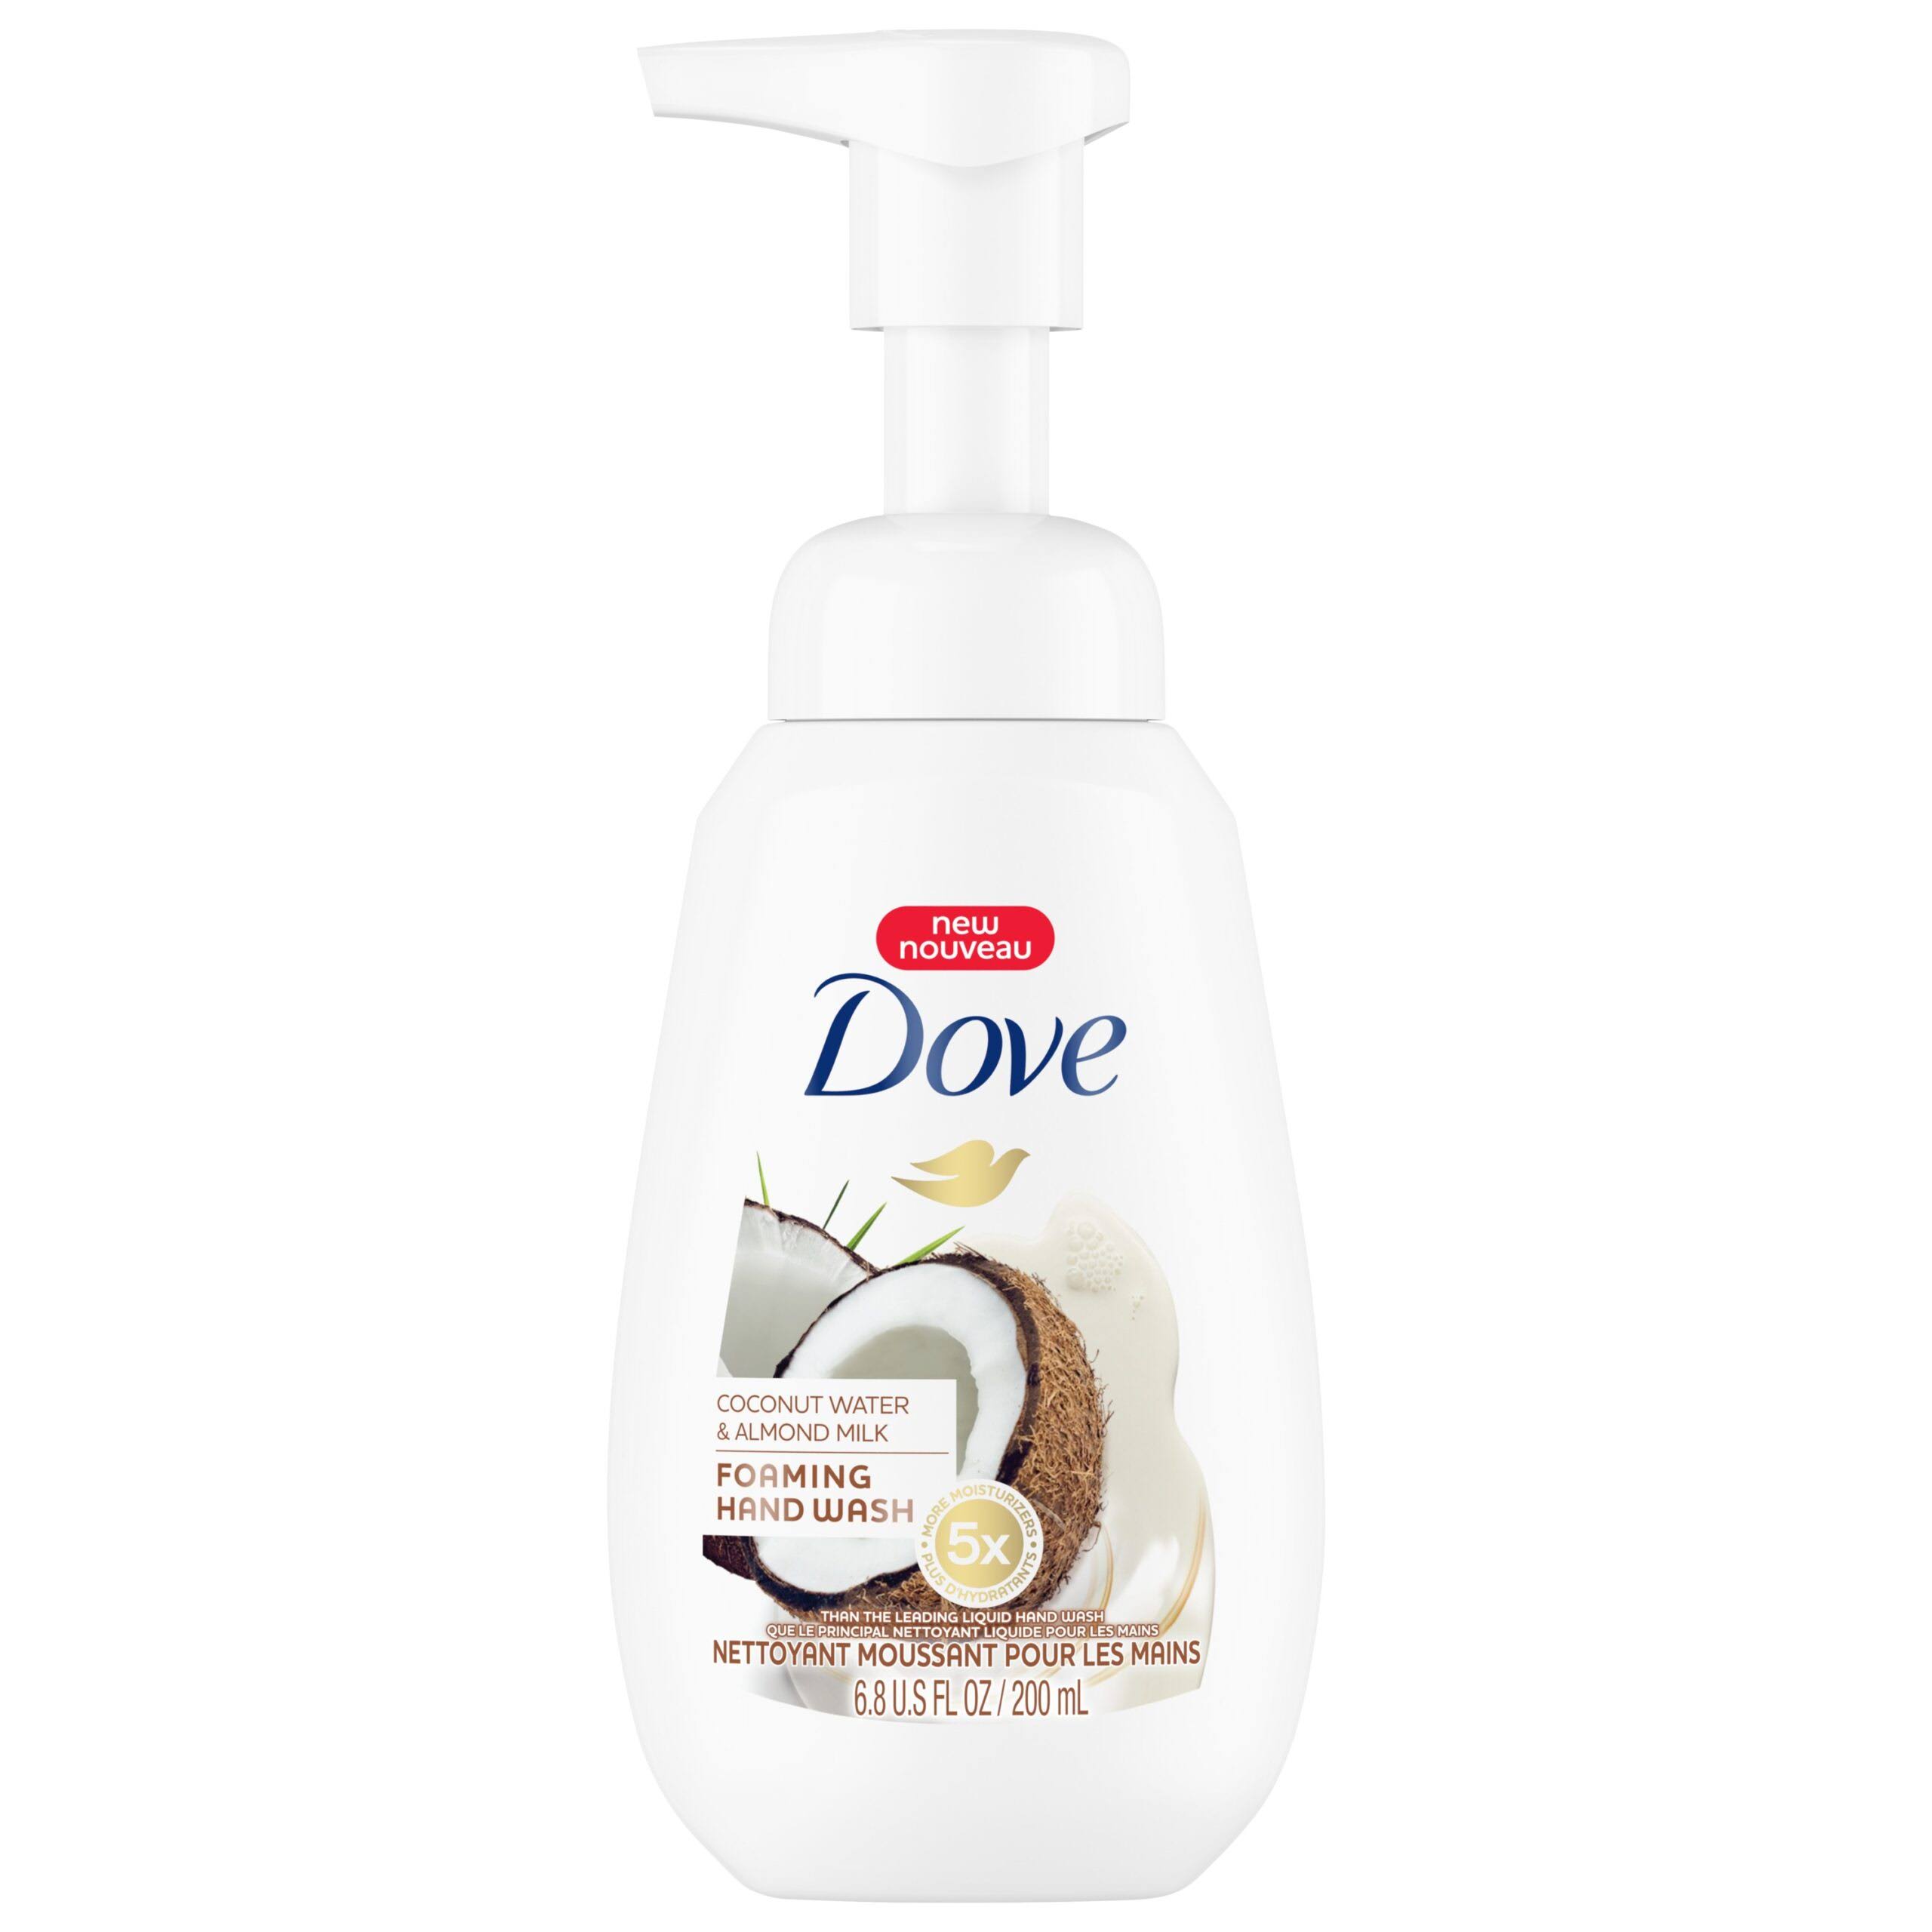 Dove Foaming Hand Wash - Coconut Water + Almond Milk, 6.8oz